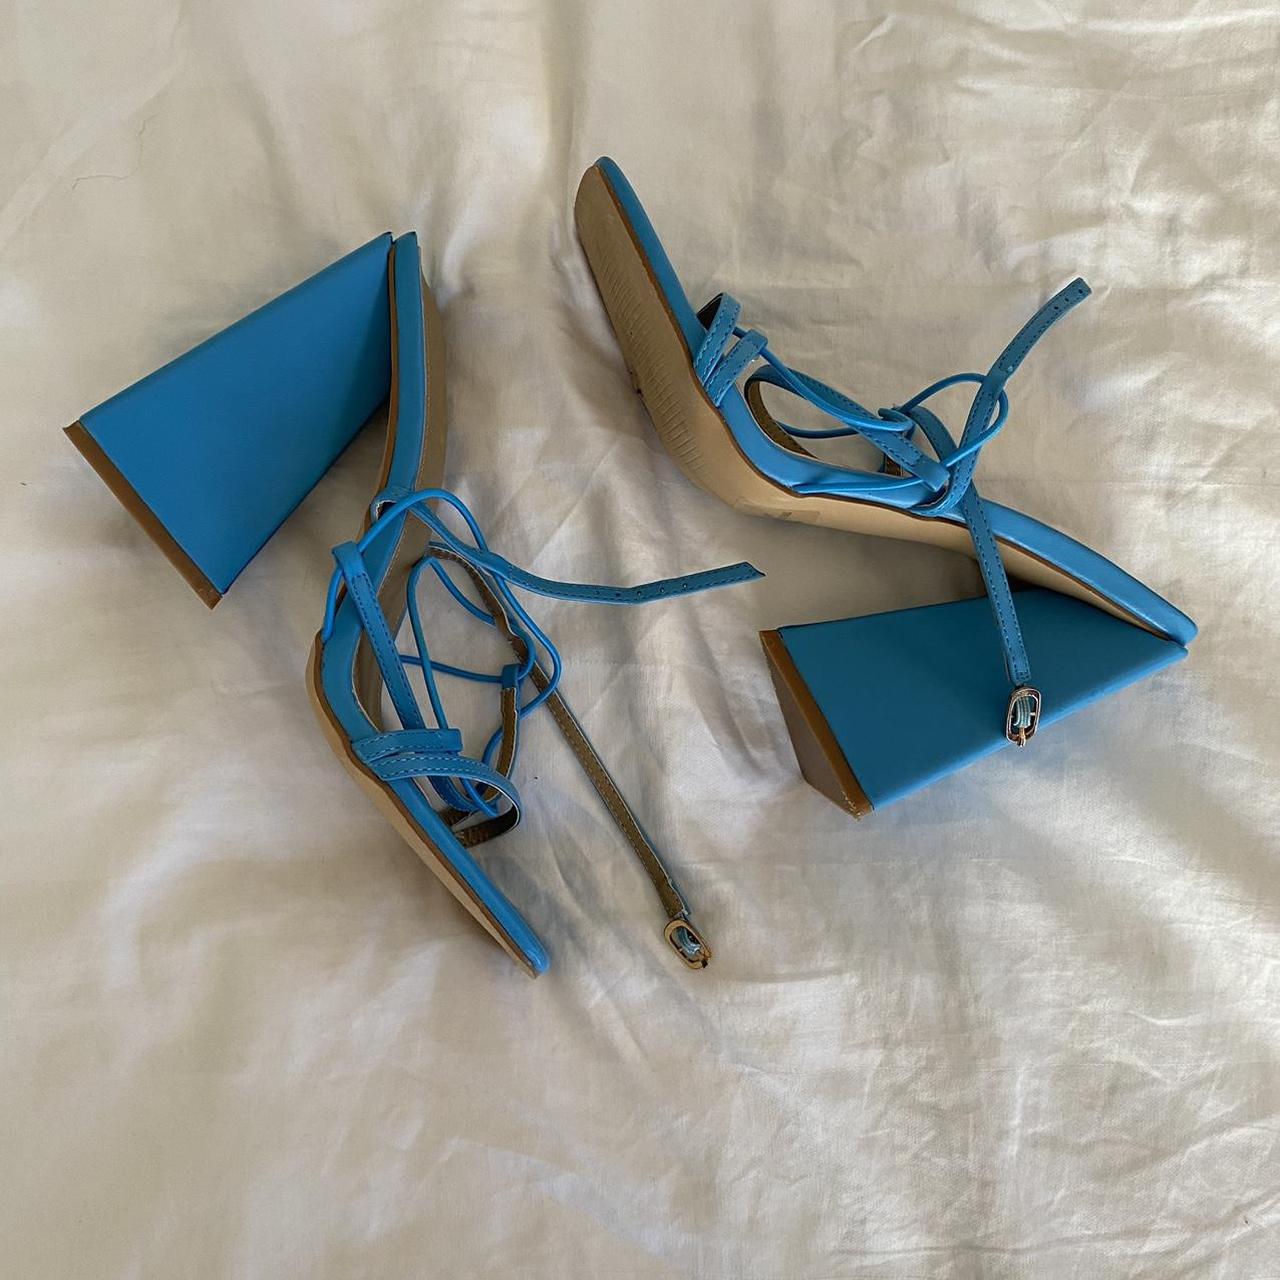 Ego official blue platform heels Size UK5 (AUS 7)... - Depop